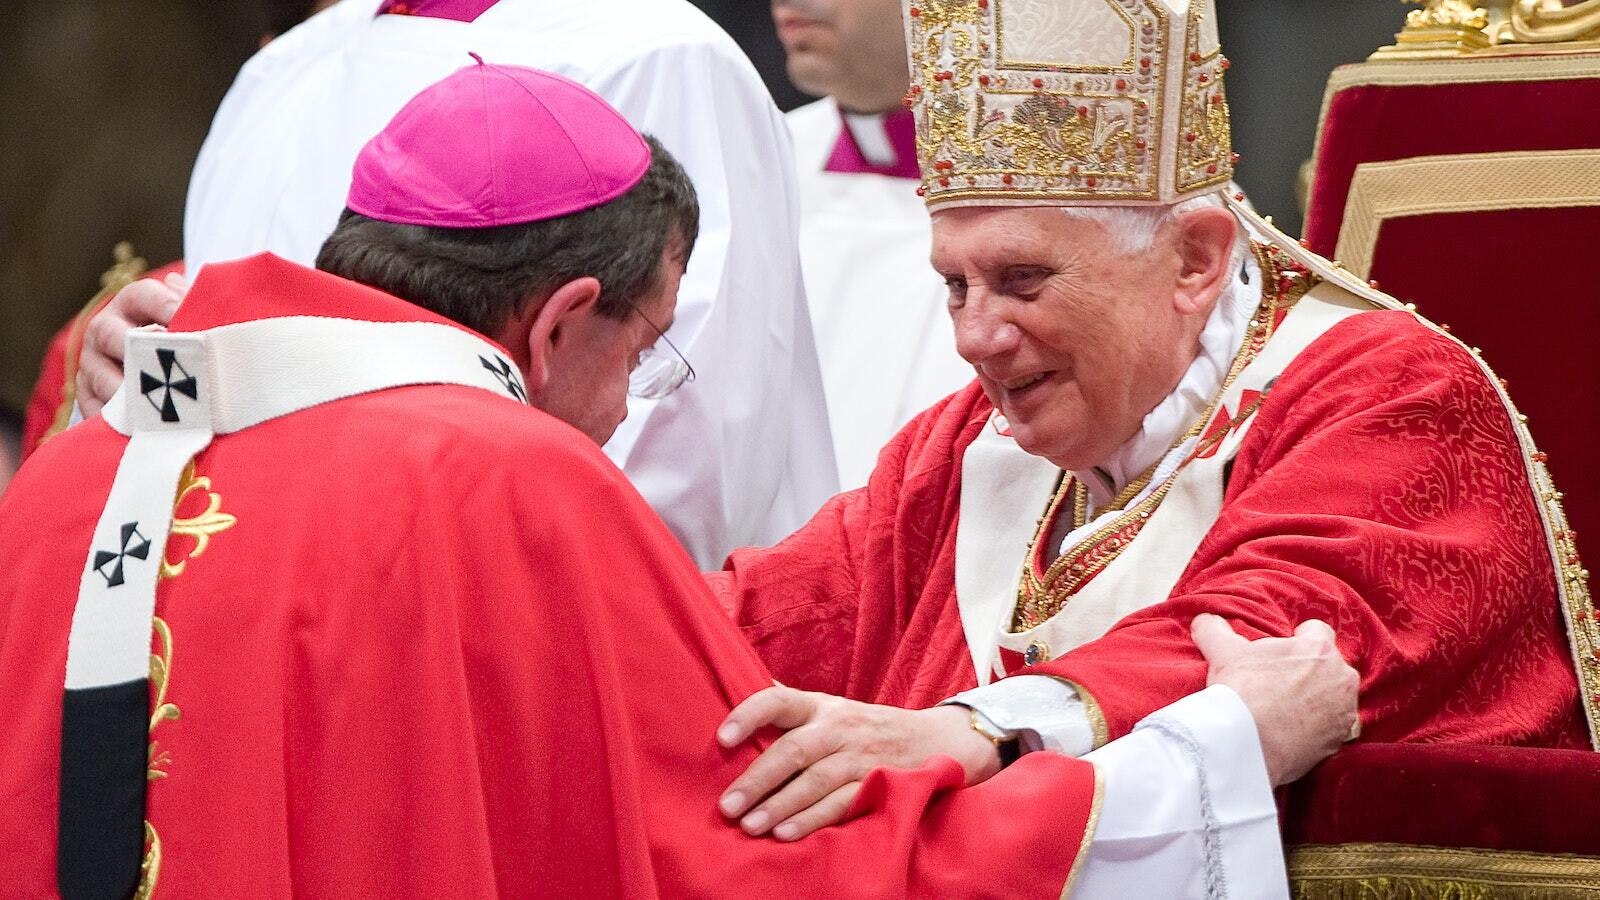 El Papa Benedicto XVI sonríe mientras dirige unas palabras de aliento al Arzobispo Vigneron tras otorgarle el palio, una banda de lana que denota su papel de pastor, el 29 de junio de 2009, en la Basílica de San Pedro en Roma. (L'Osservatore Romano | CNS photo)